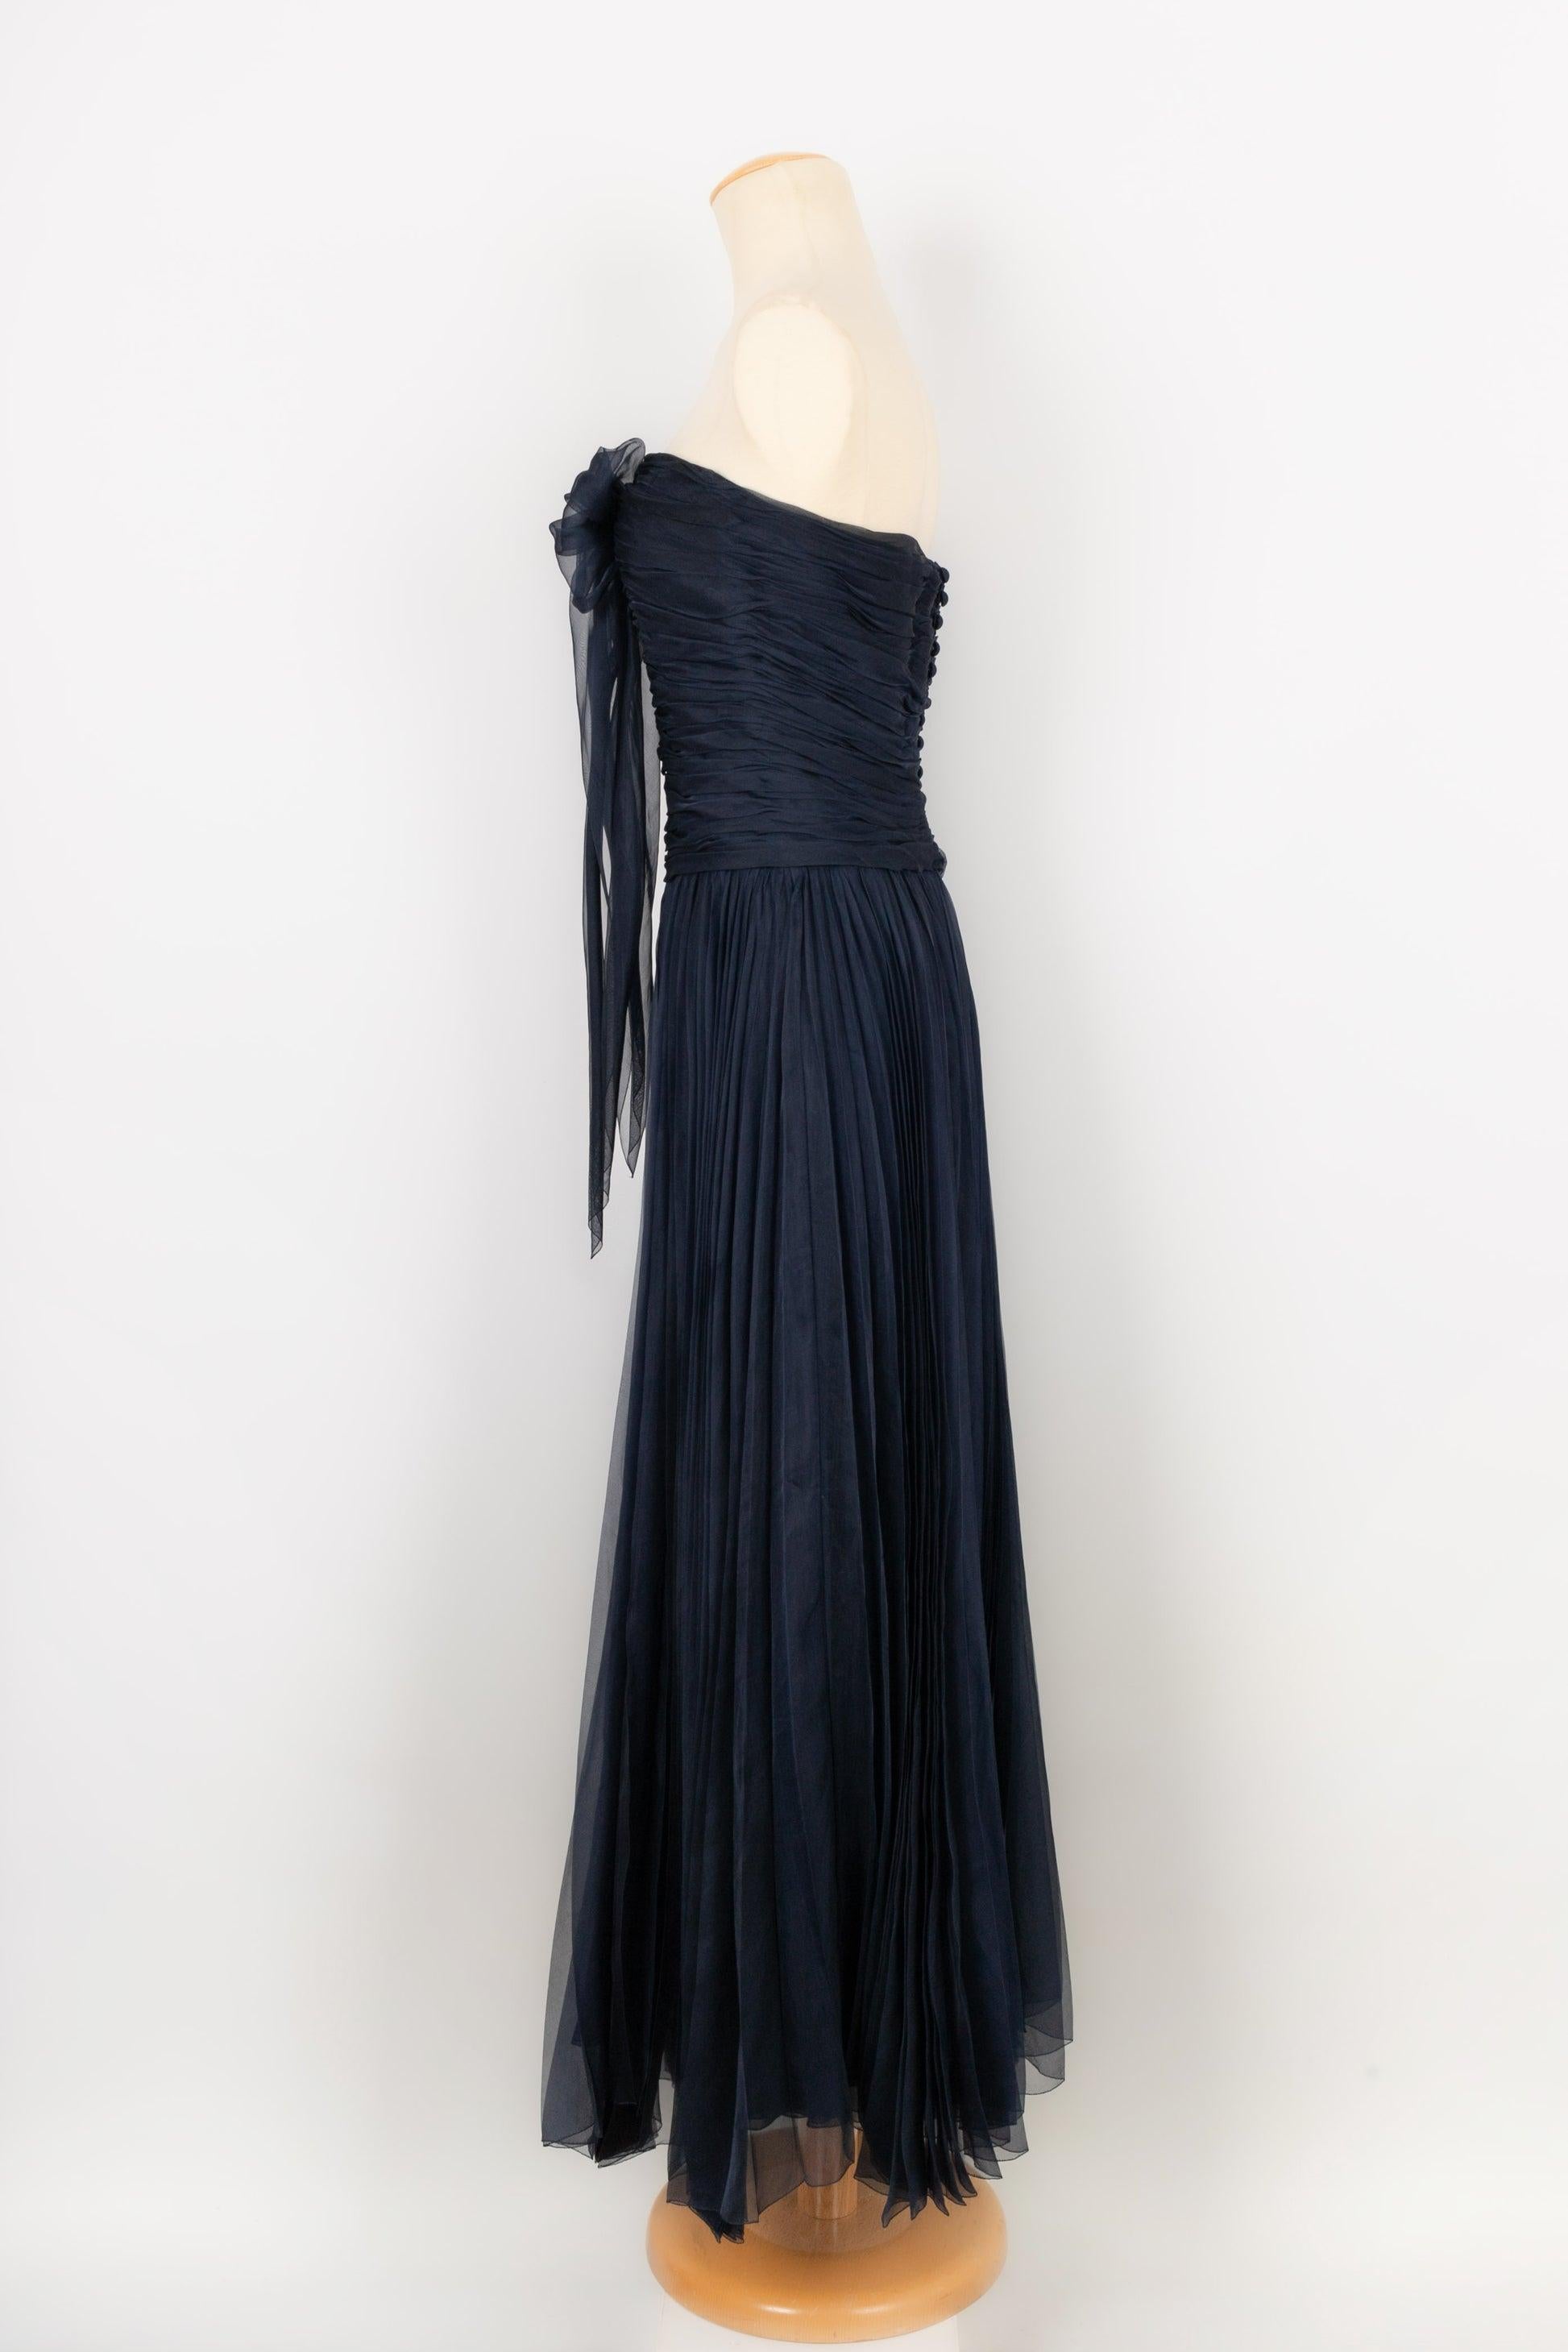 Women's Chanel Long Bustier Dress in Navy Blue Pleated Silk Taffeta For Sale